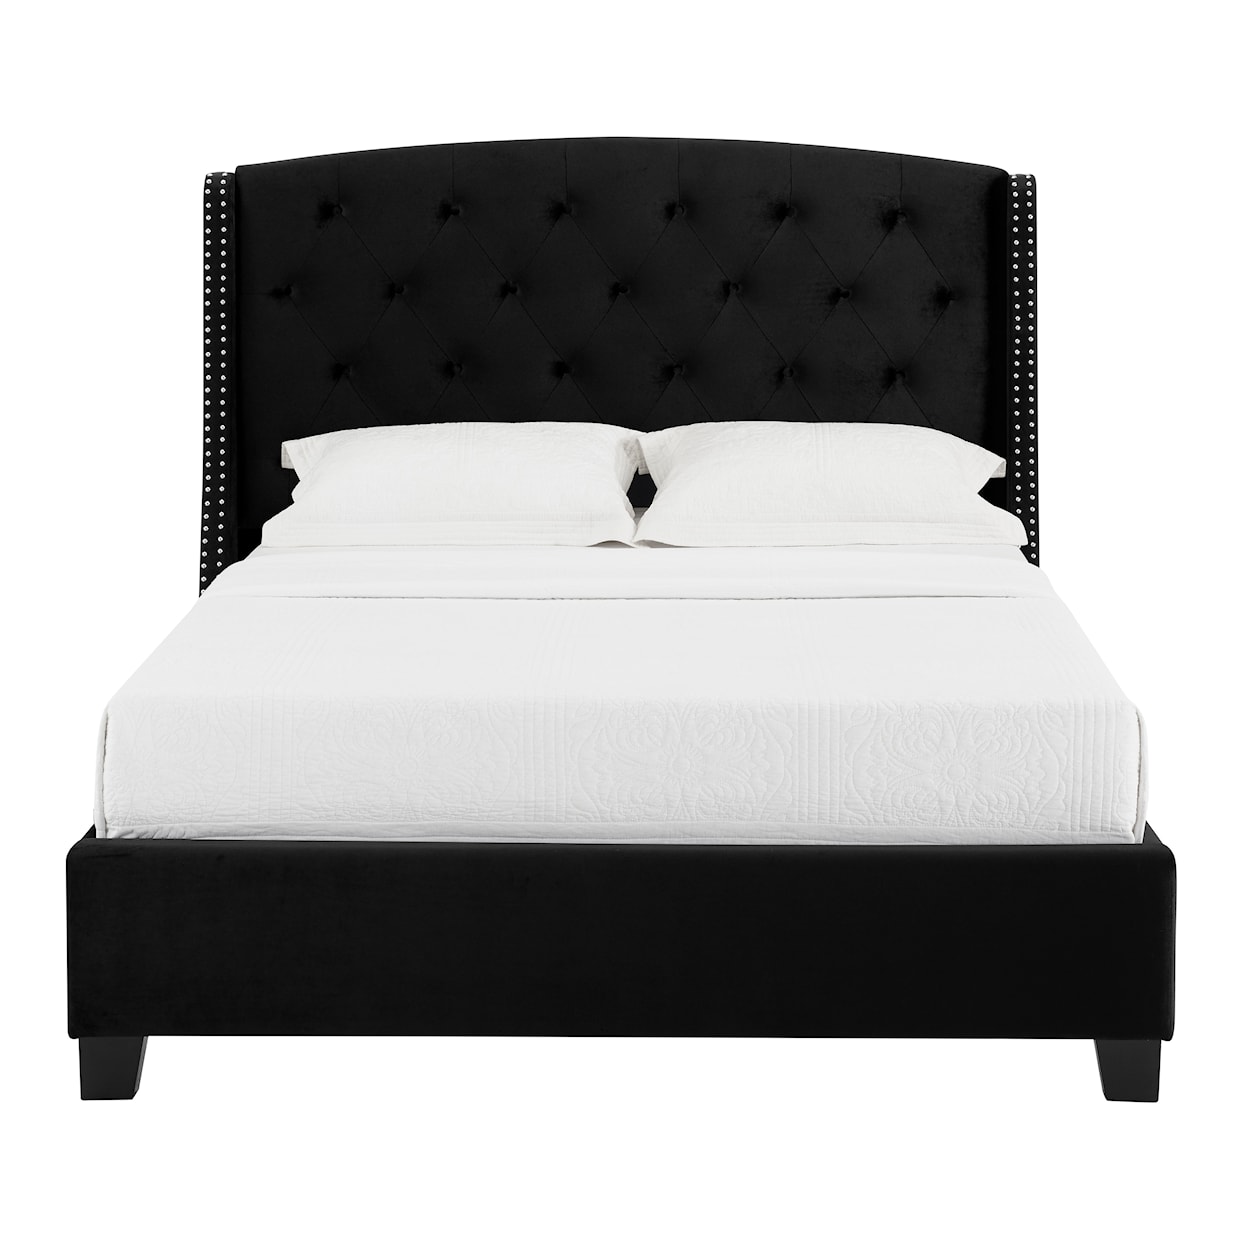 CM Eva Upholstered Queen Bed